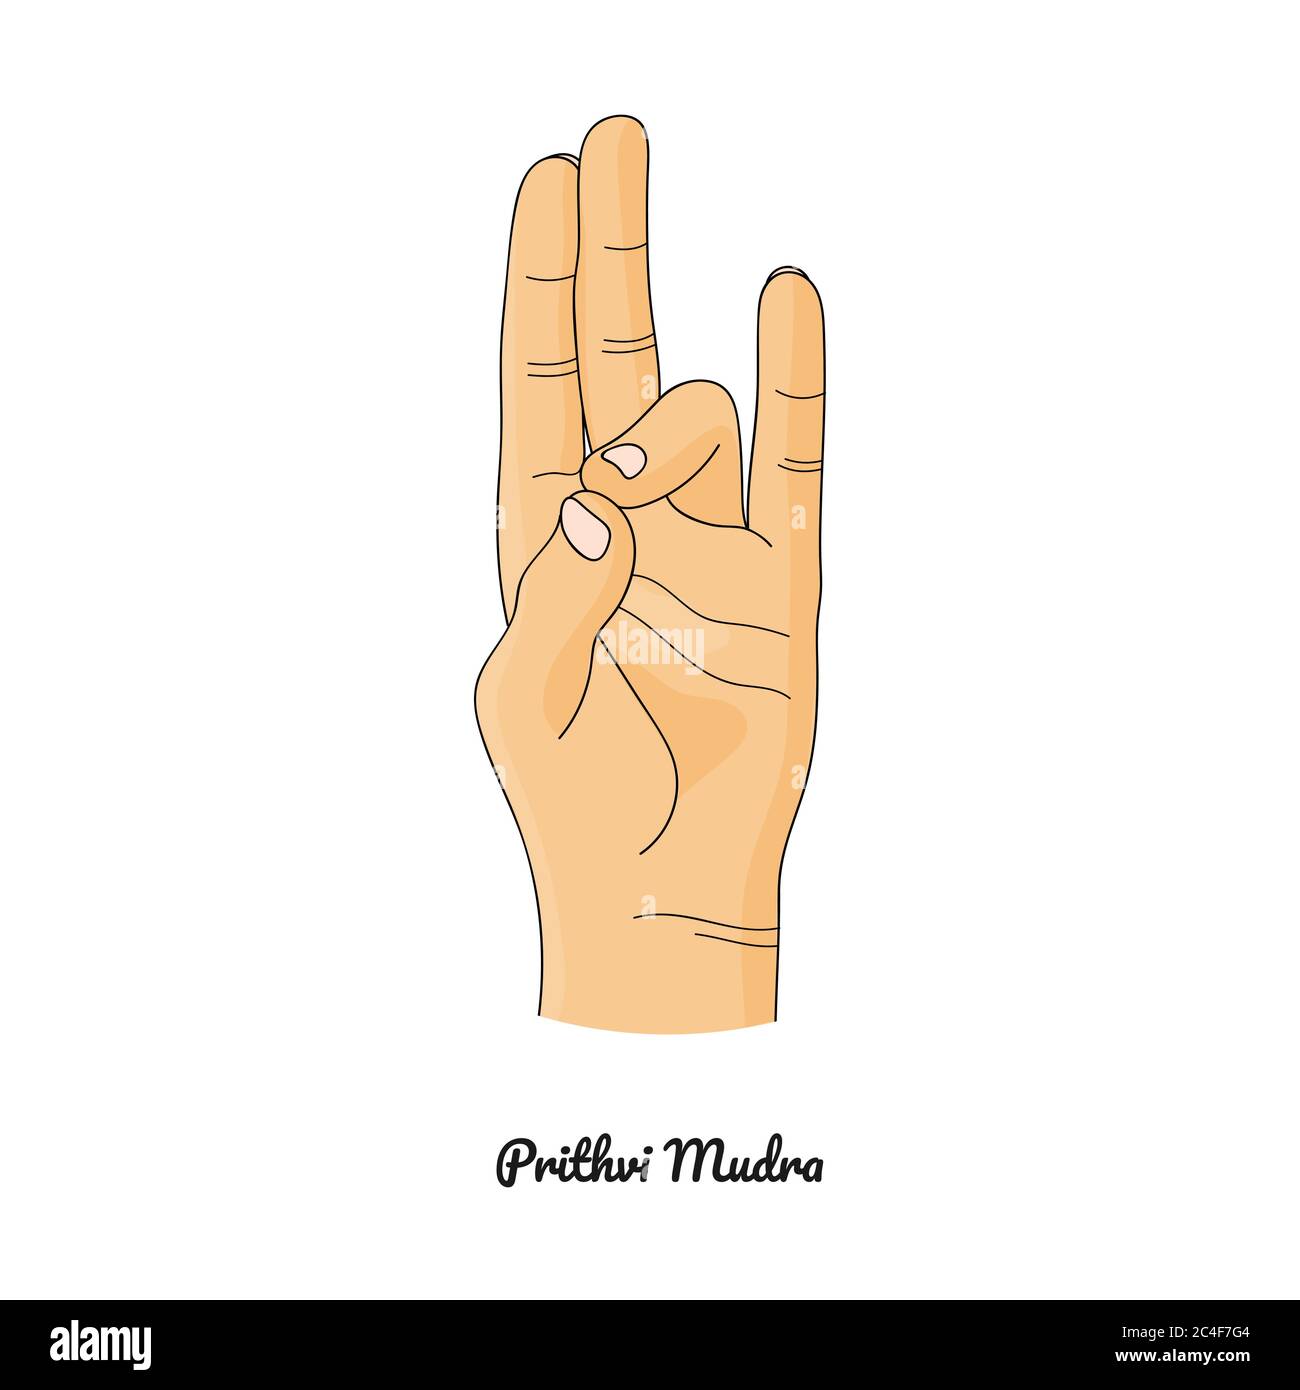 Prithvi Mudra / gesture della Terra. Vettore. Illustrazione Vettoriale